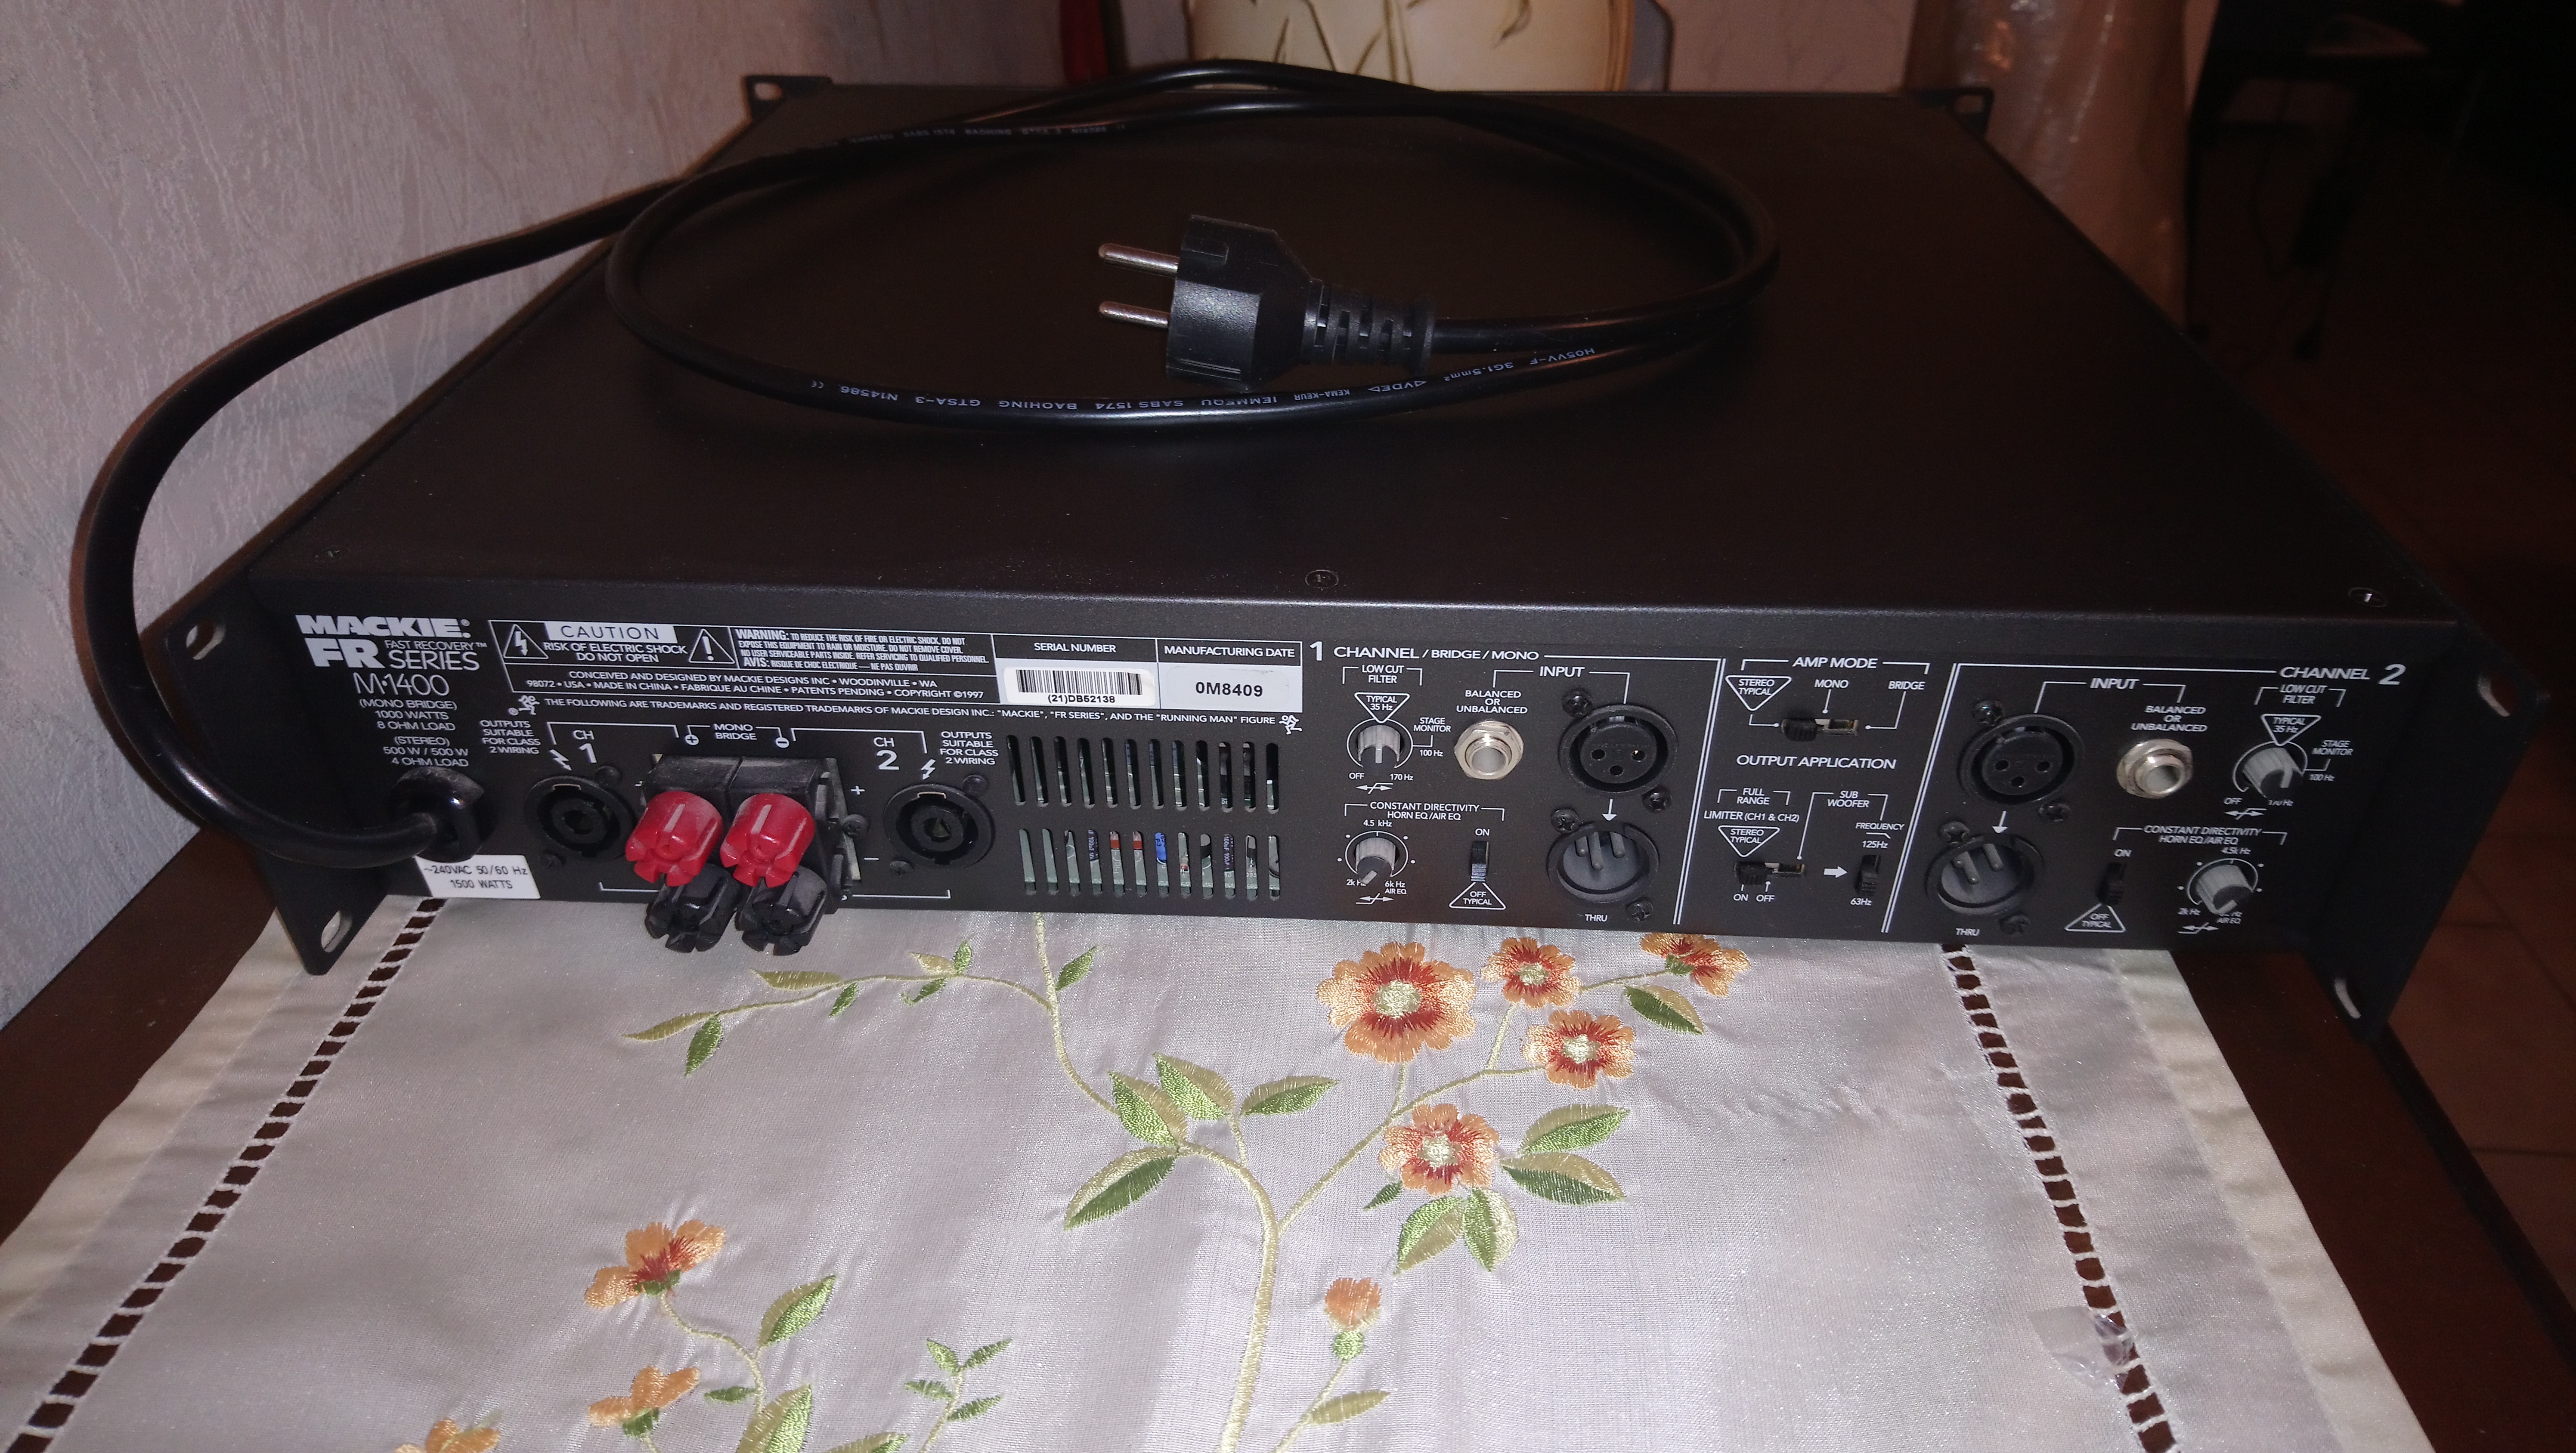 M 1400 - Mackie M 1400 - Audiofanzine